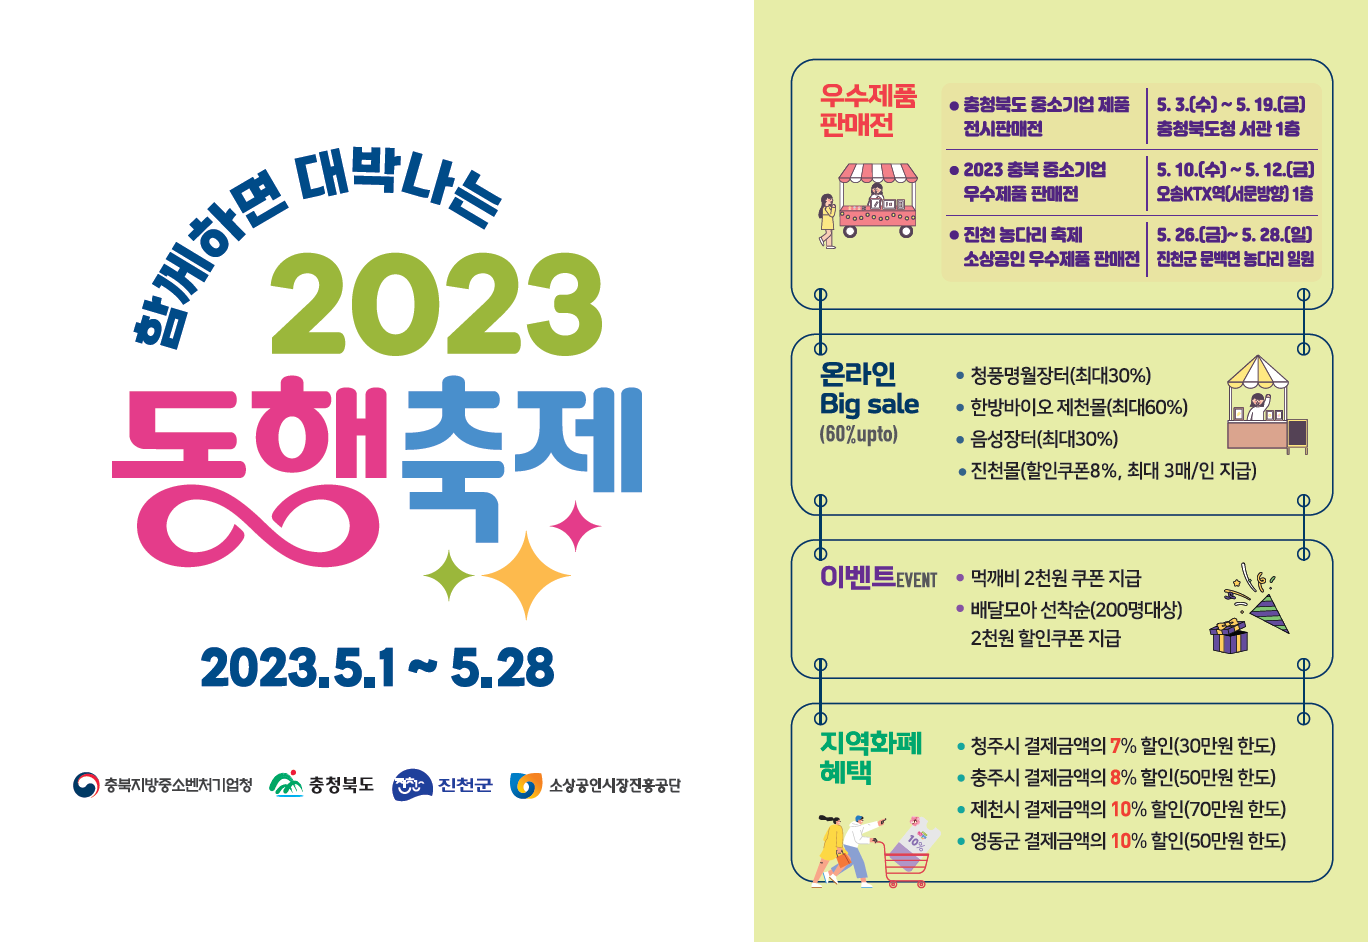 「5월 봄빛 동행축제」 (2023 대한민국 동행축제)